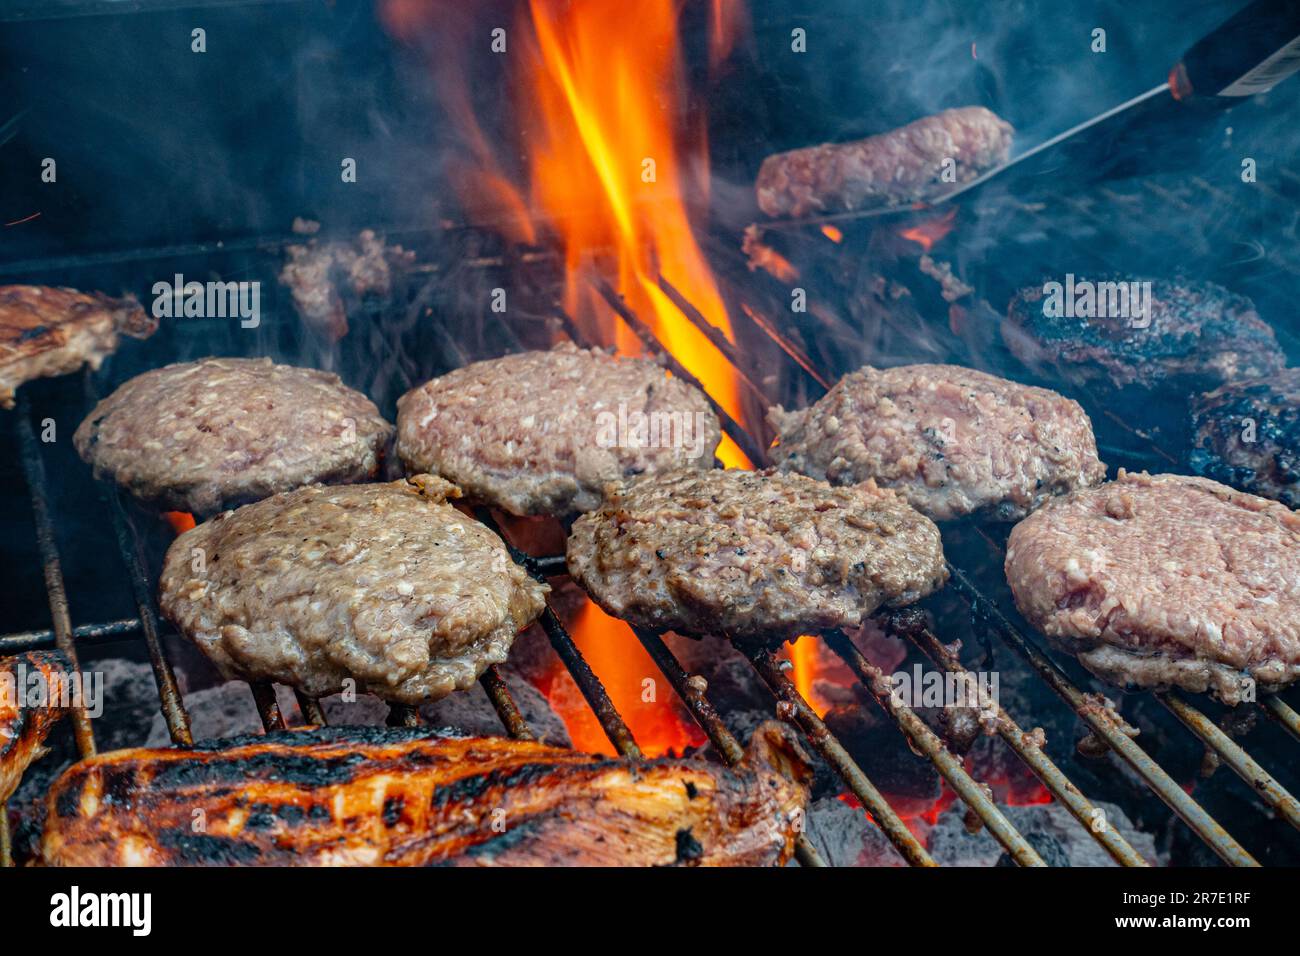 Hamburgers de bœuf cuisant sur un barbecue avec des flammes orange et rouges se régimant entre les hamburgers comme la graisse descend de la plaque sur le charbon de bois ci-dessous Banque D'Images